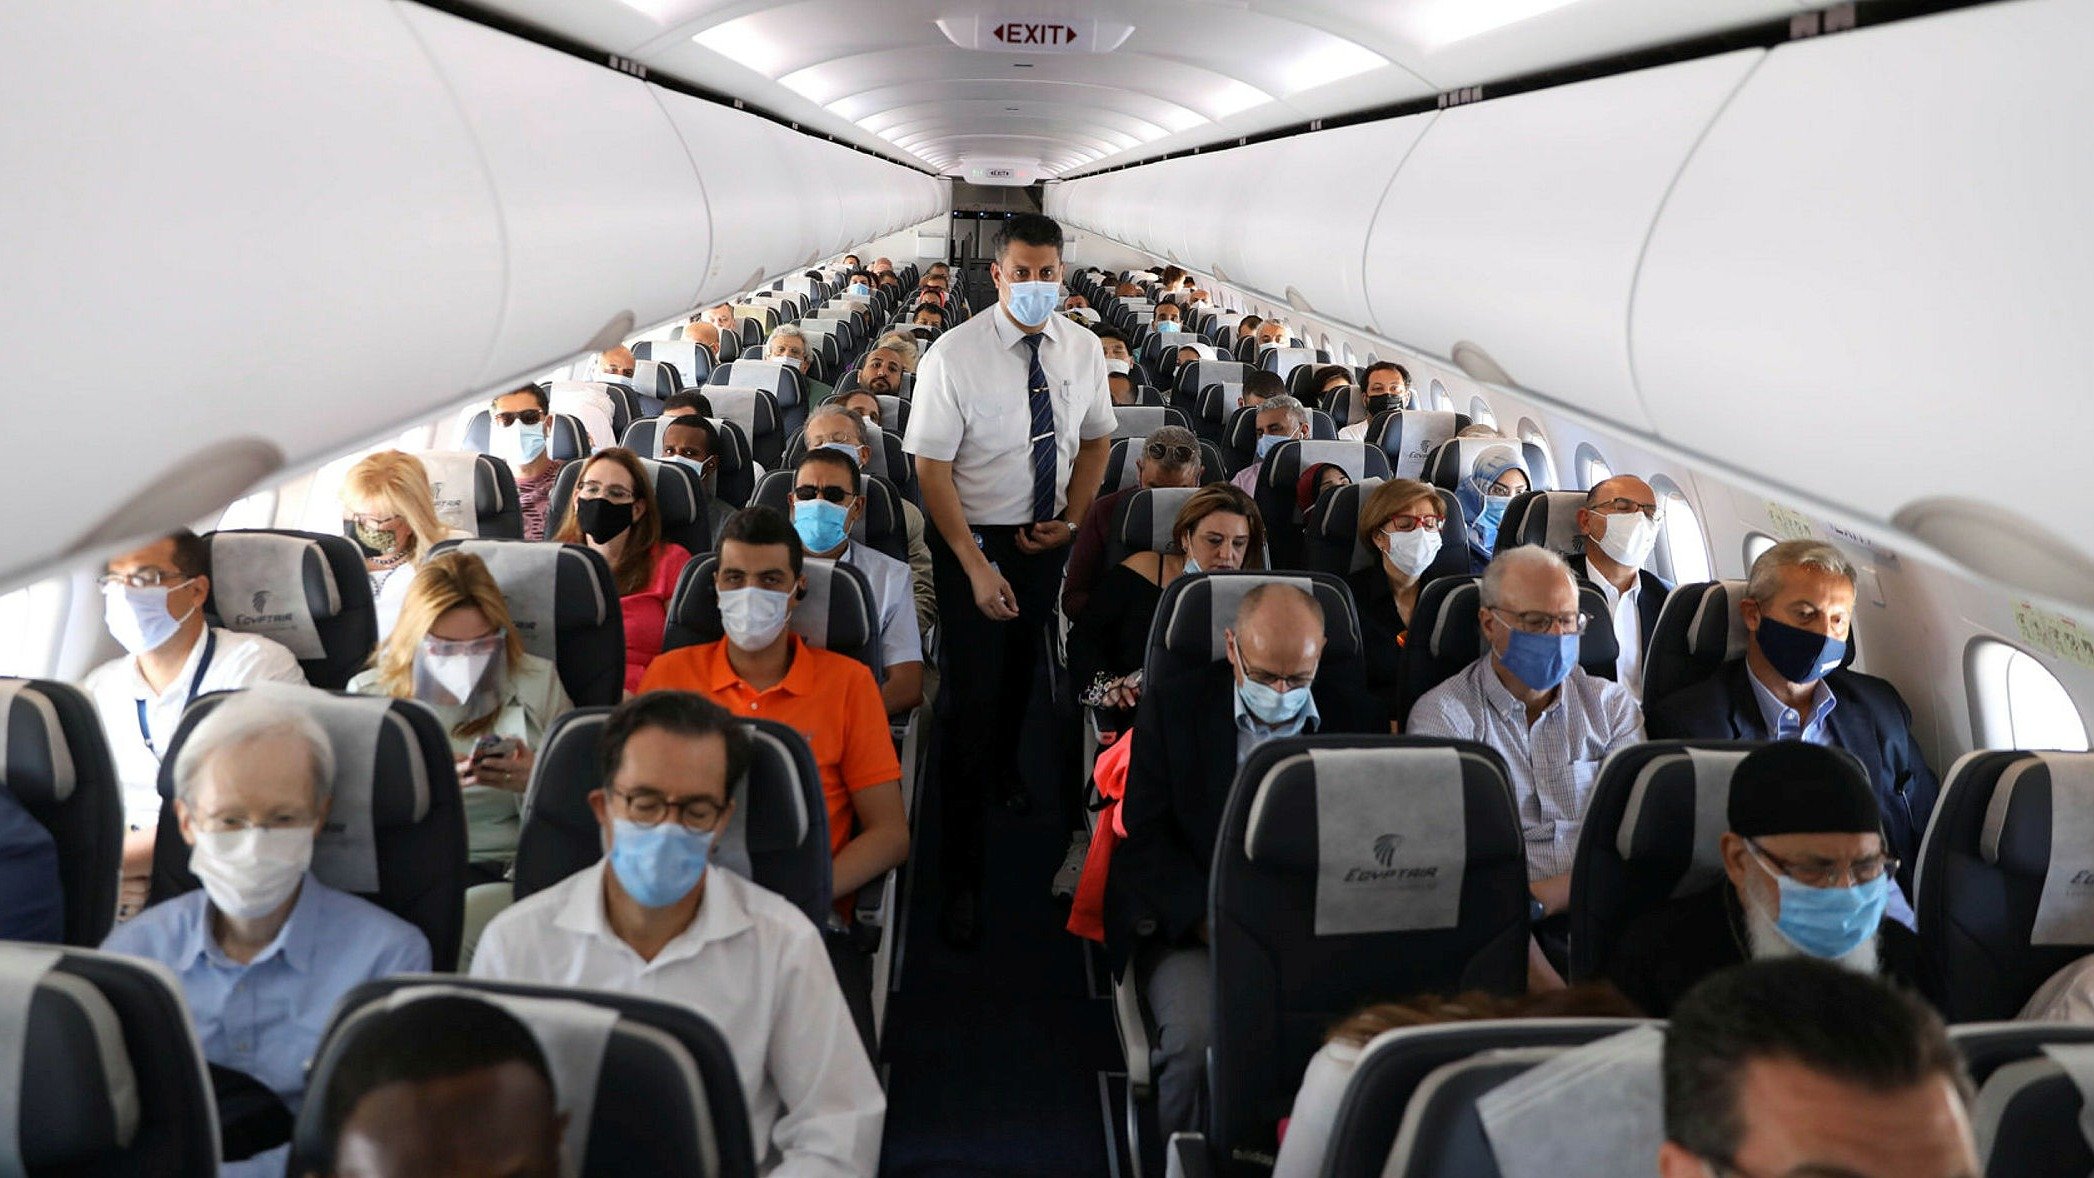 یاتا اصرار دارد که کابین هواپیما یک "محیط کم خطر" برای COVID-19 باشد